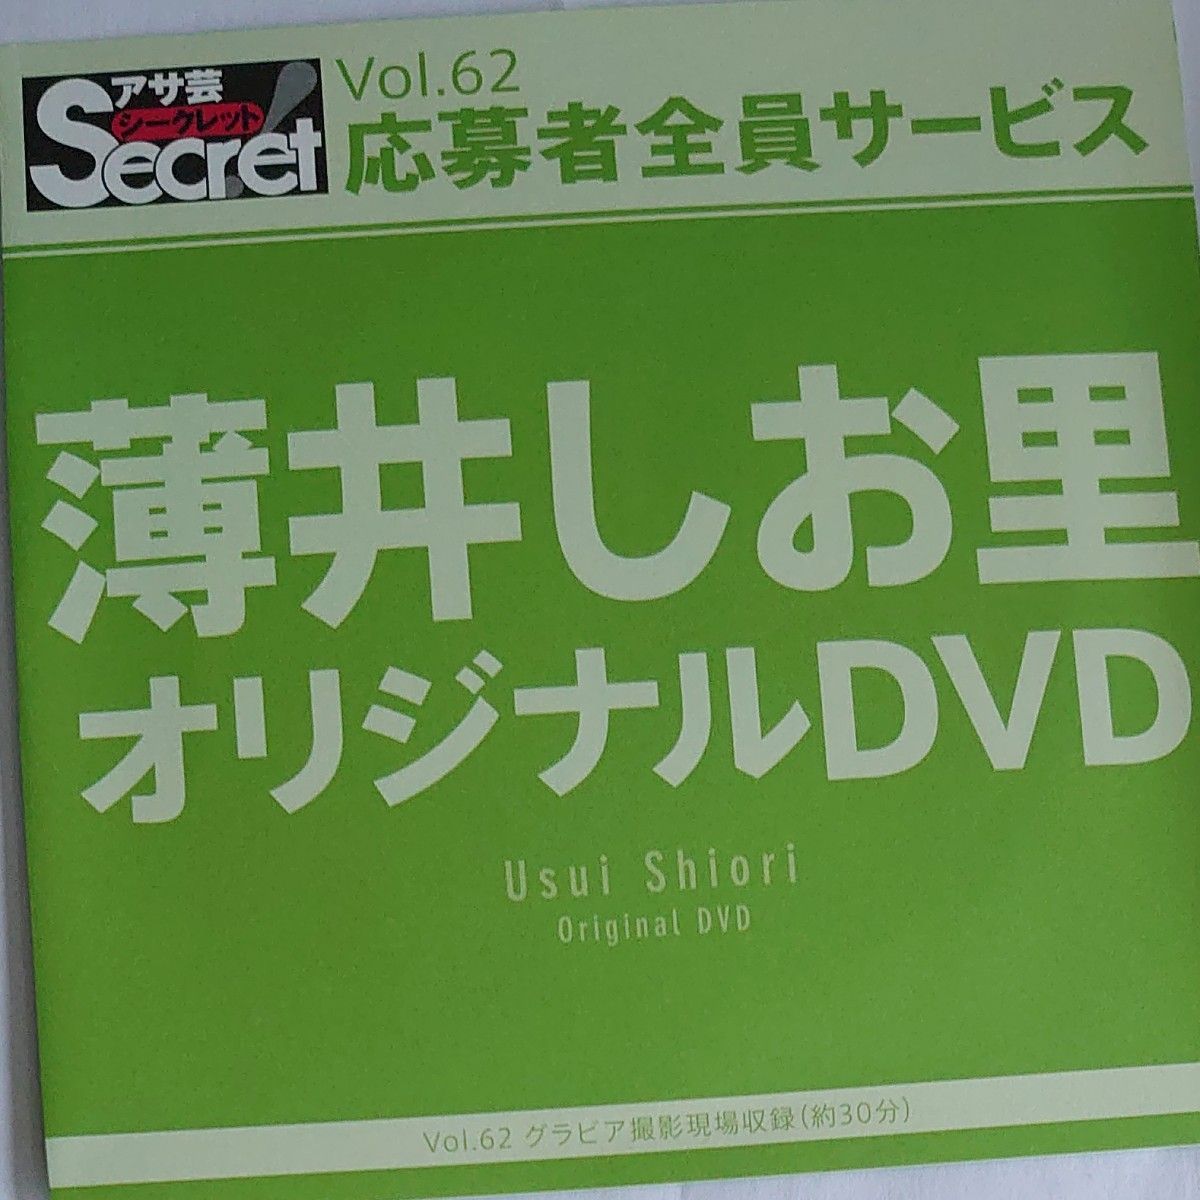 DVD アサ芸シークレット vol.62 薄井しお里 開封済